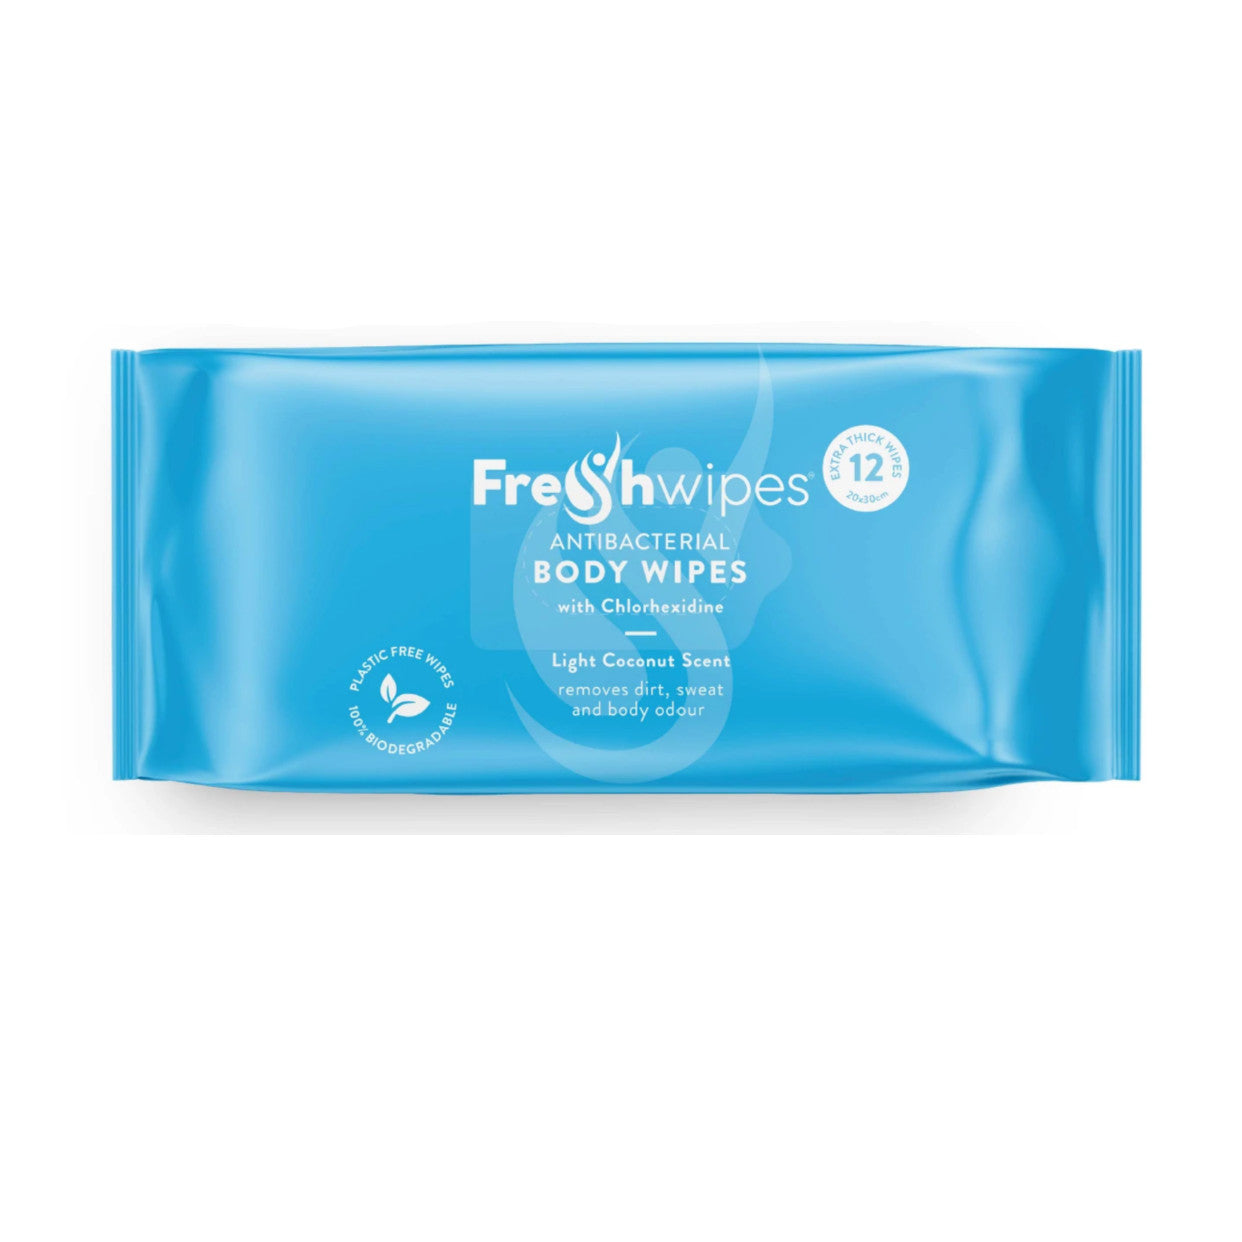 FreshWipes: anti-bacterial full body wipes